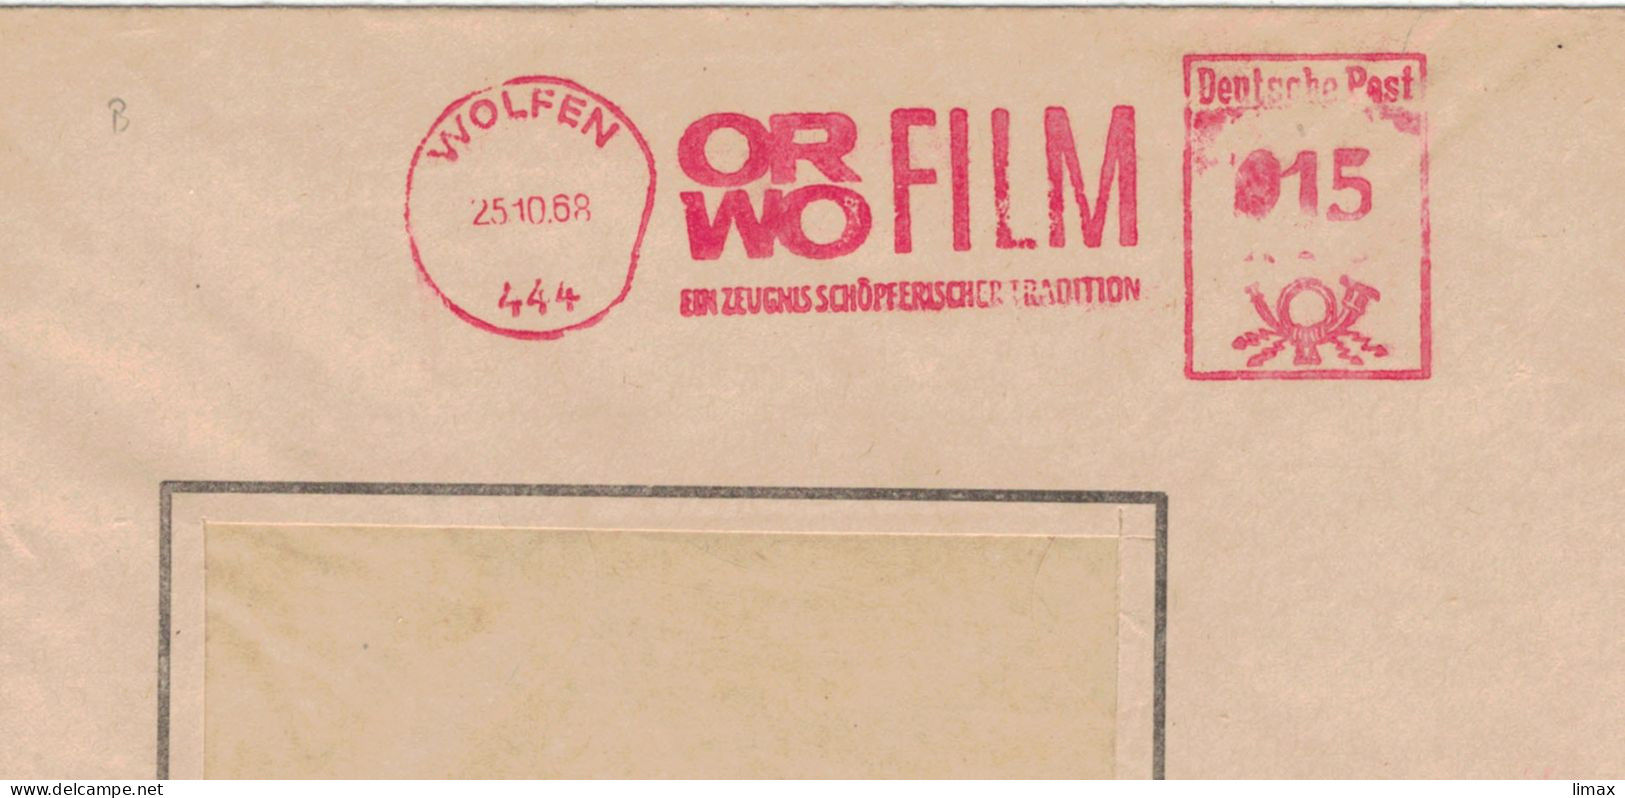 444 Wolfen 1968 Zeugnis Schöpferischer Tradition ORWO Film - Ehem. IG Farben - 1945 Patente An Eastman Kodak - Franking Machines (EMA)